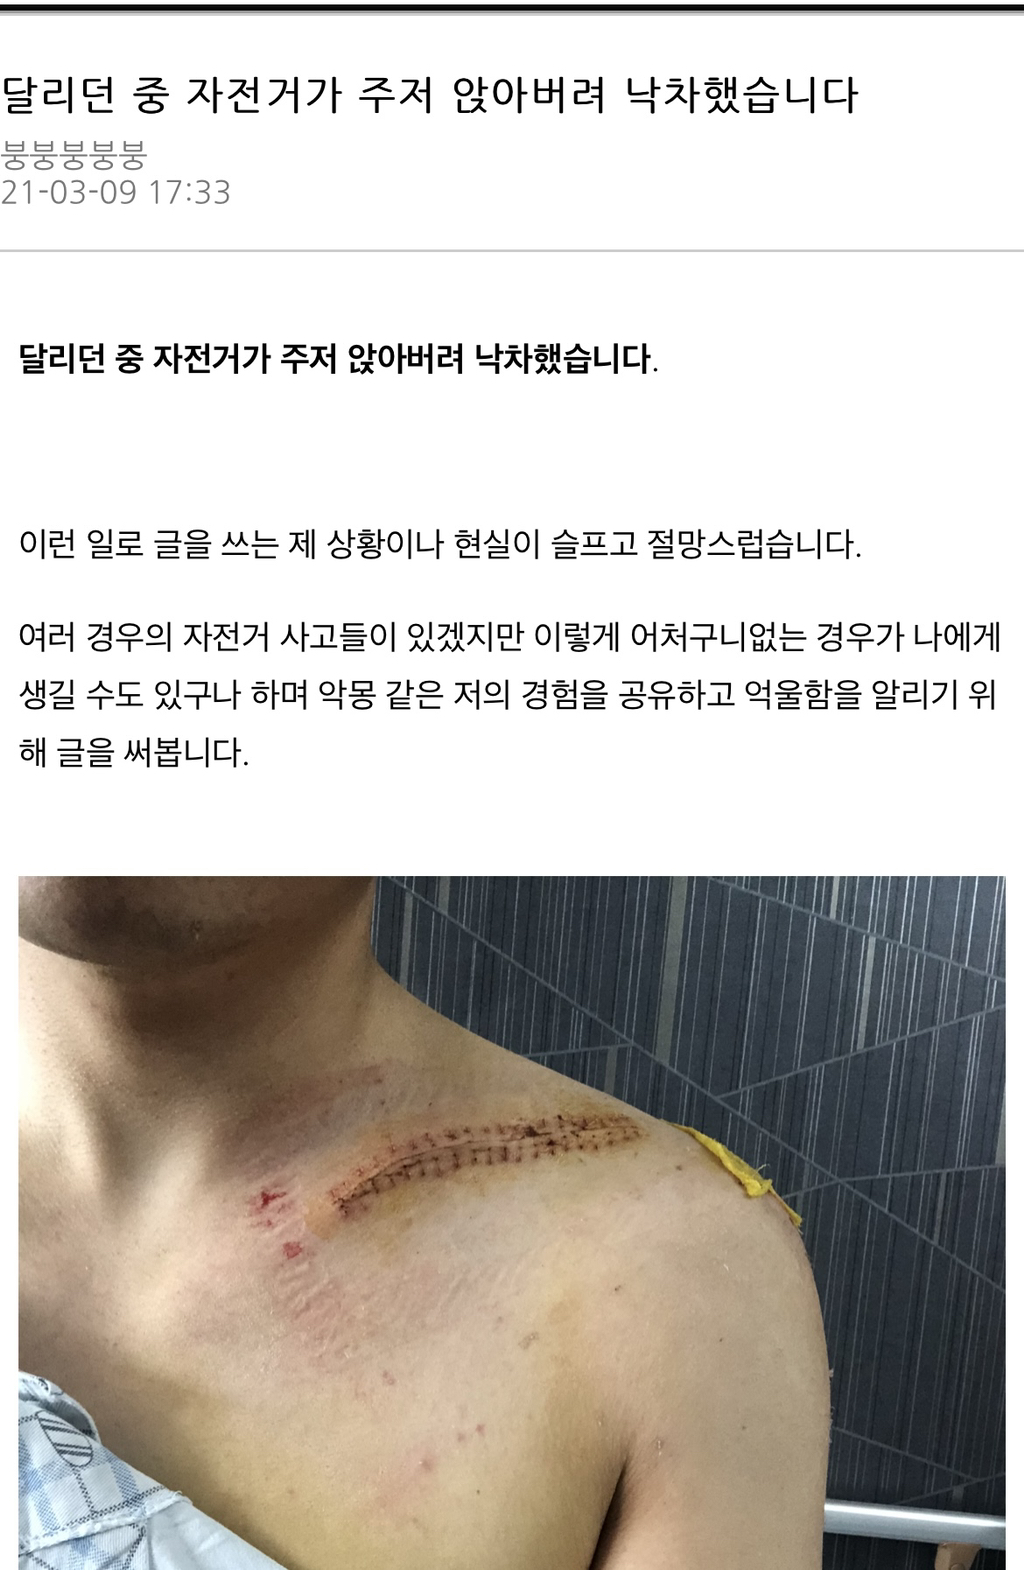 13.5 million won bike smashed while riding